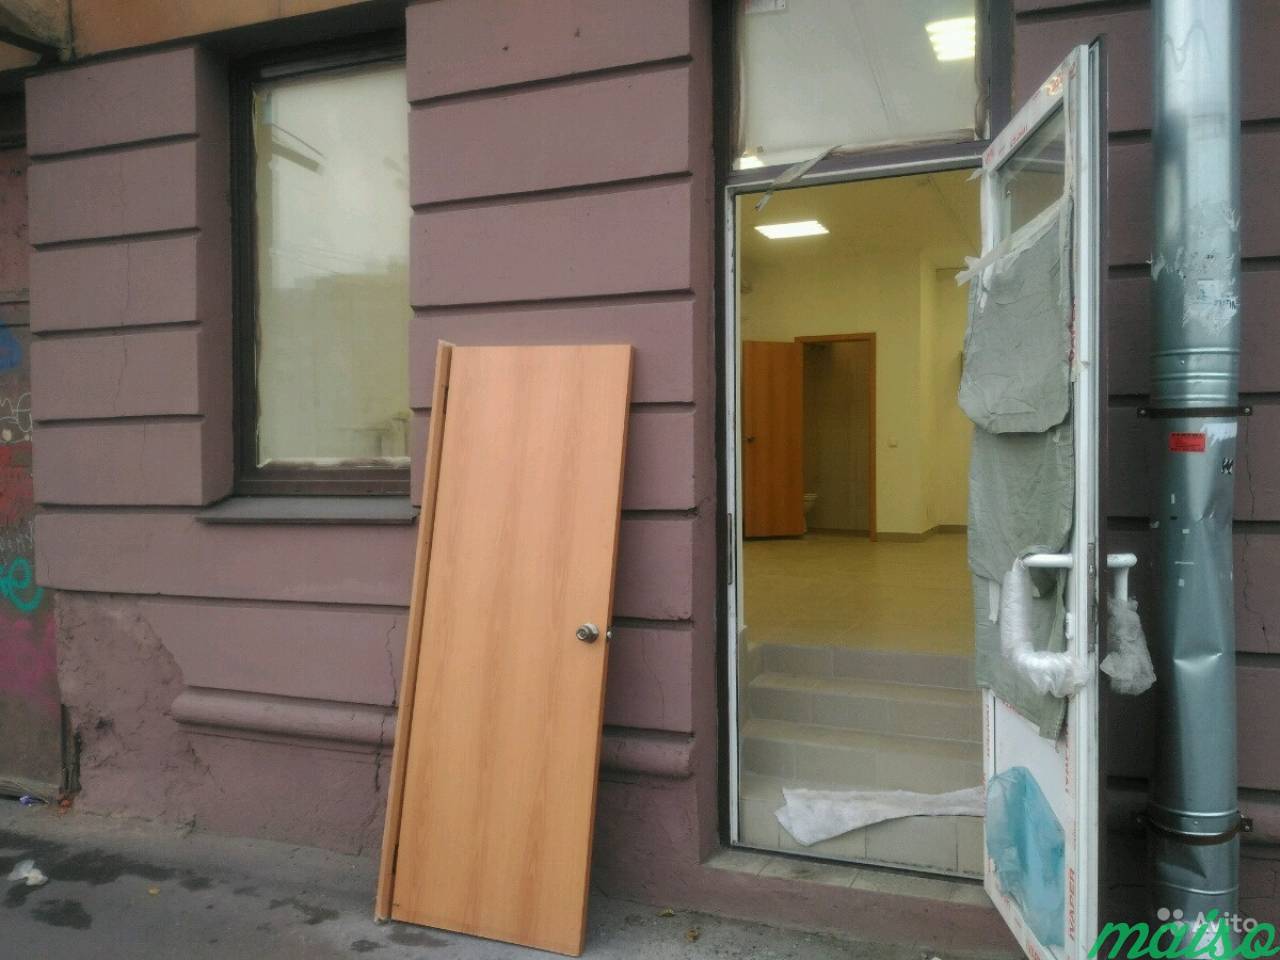 Помещение коммерческое в Санкт-Петербурге. Фото 3